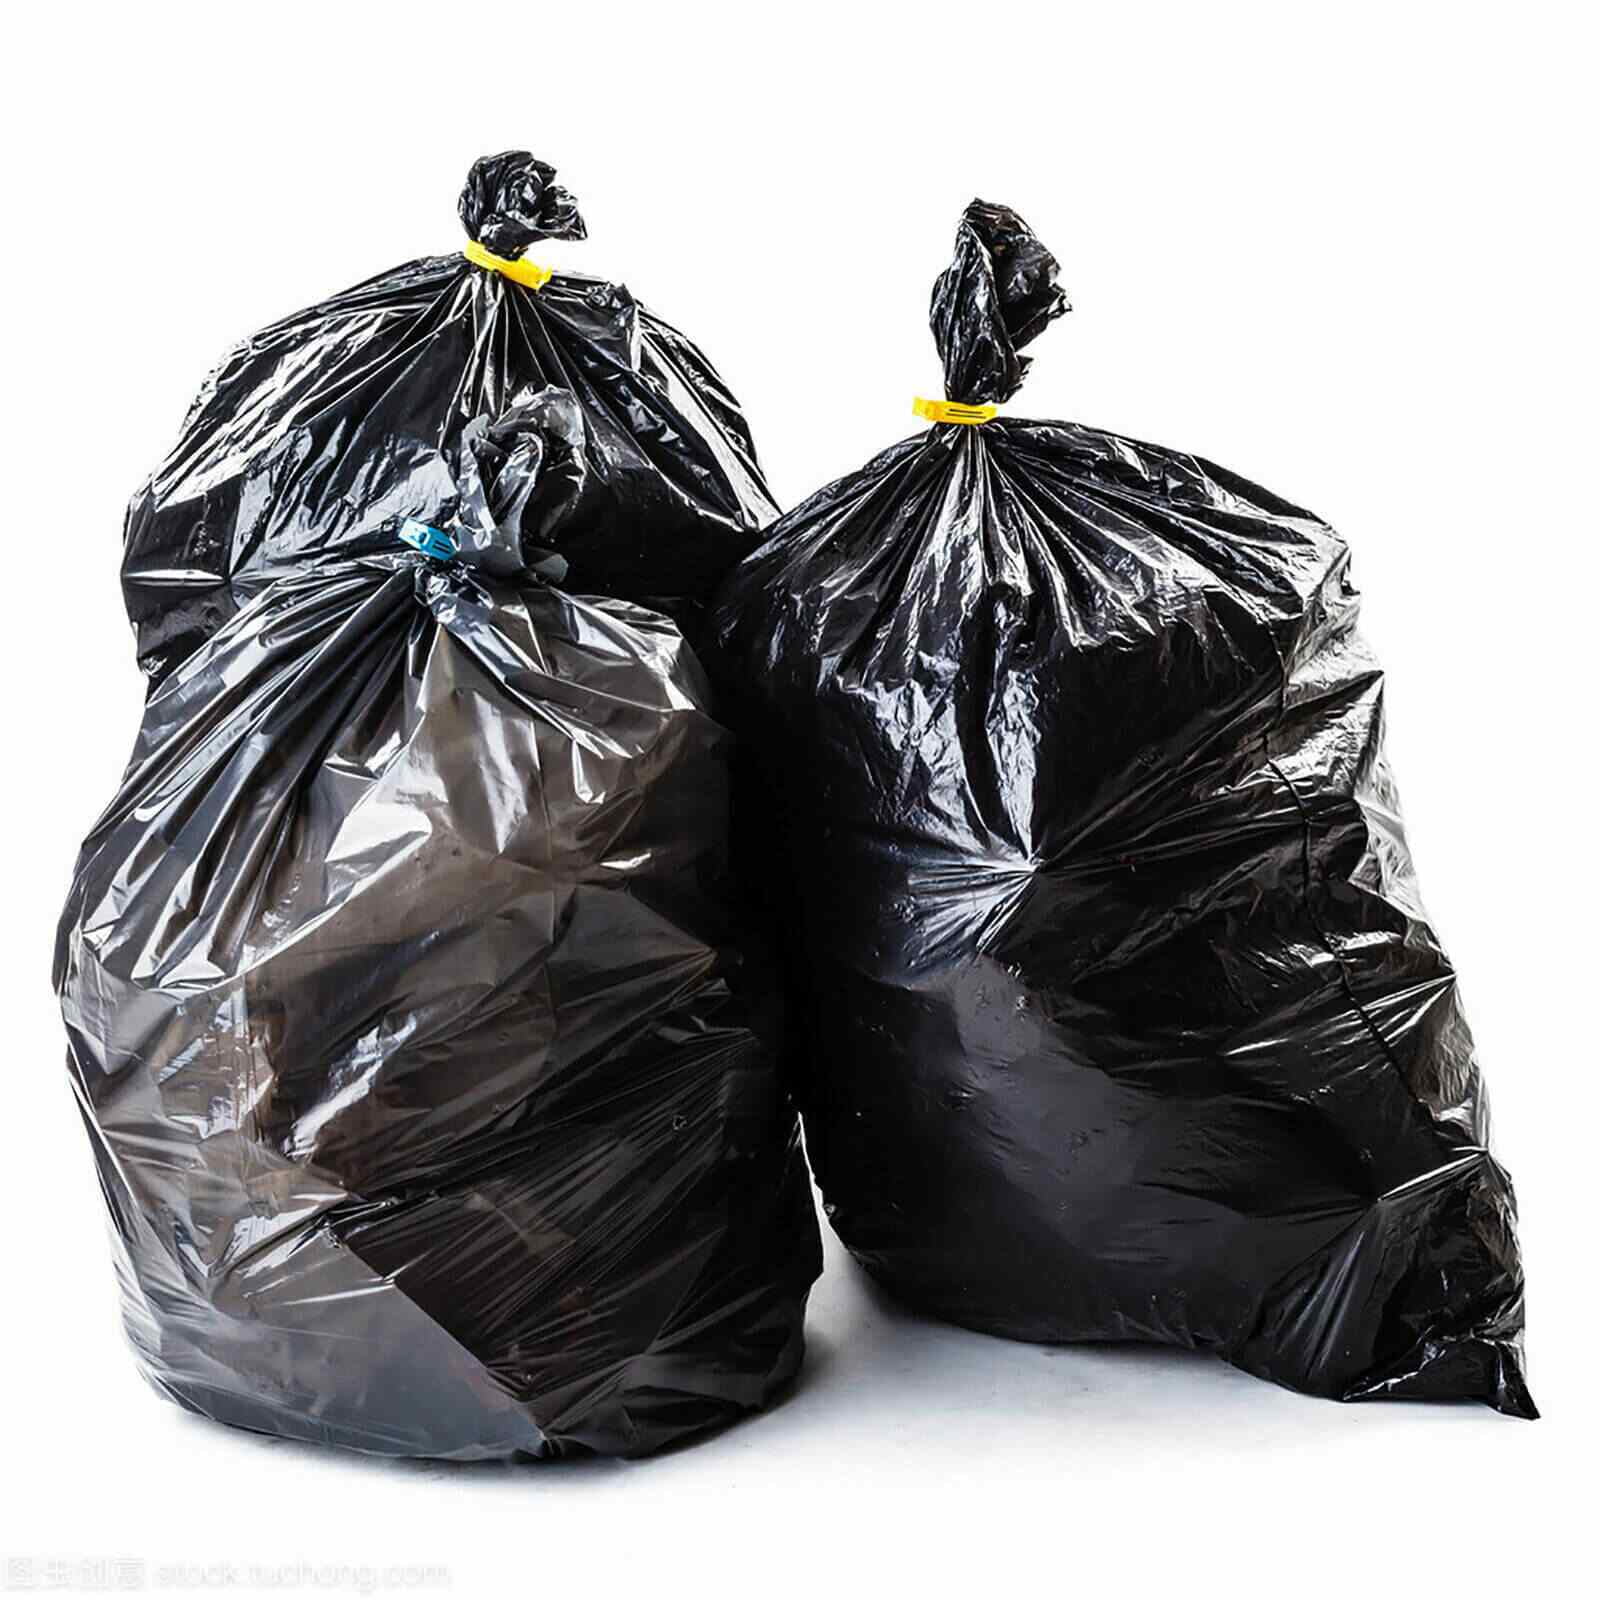 Two Big Black Trash Bag On Stock Photo 1034164576